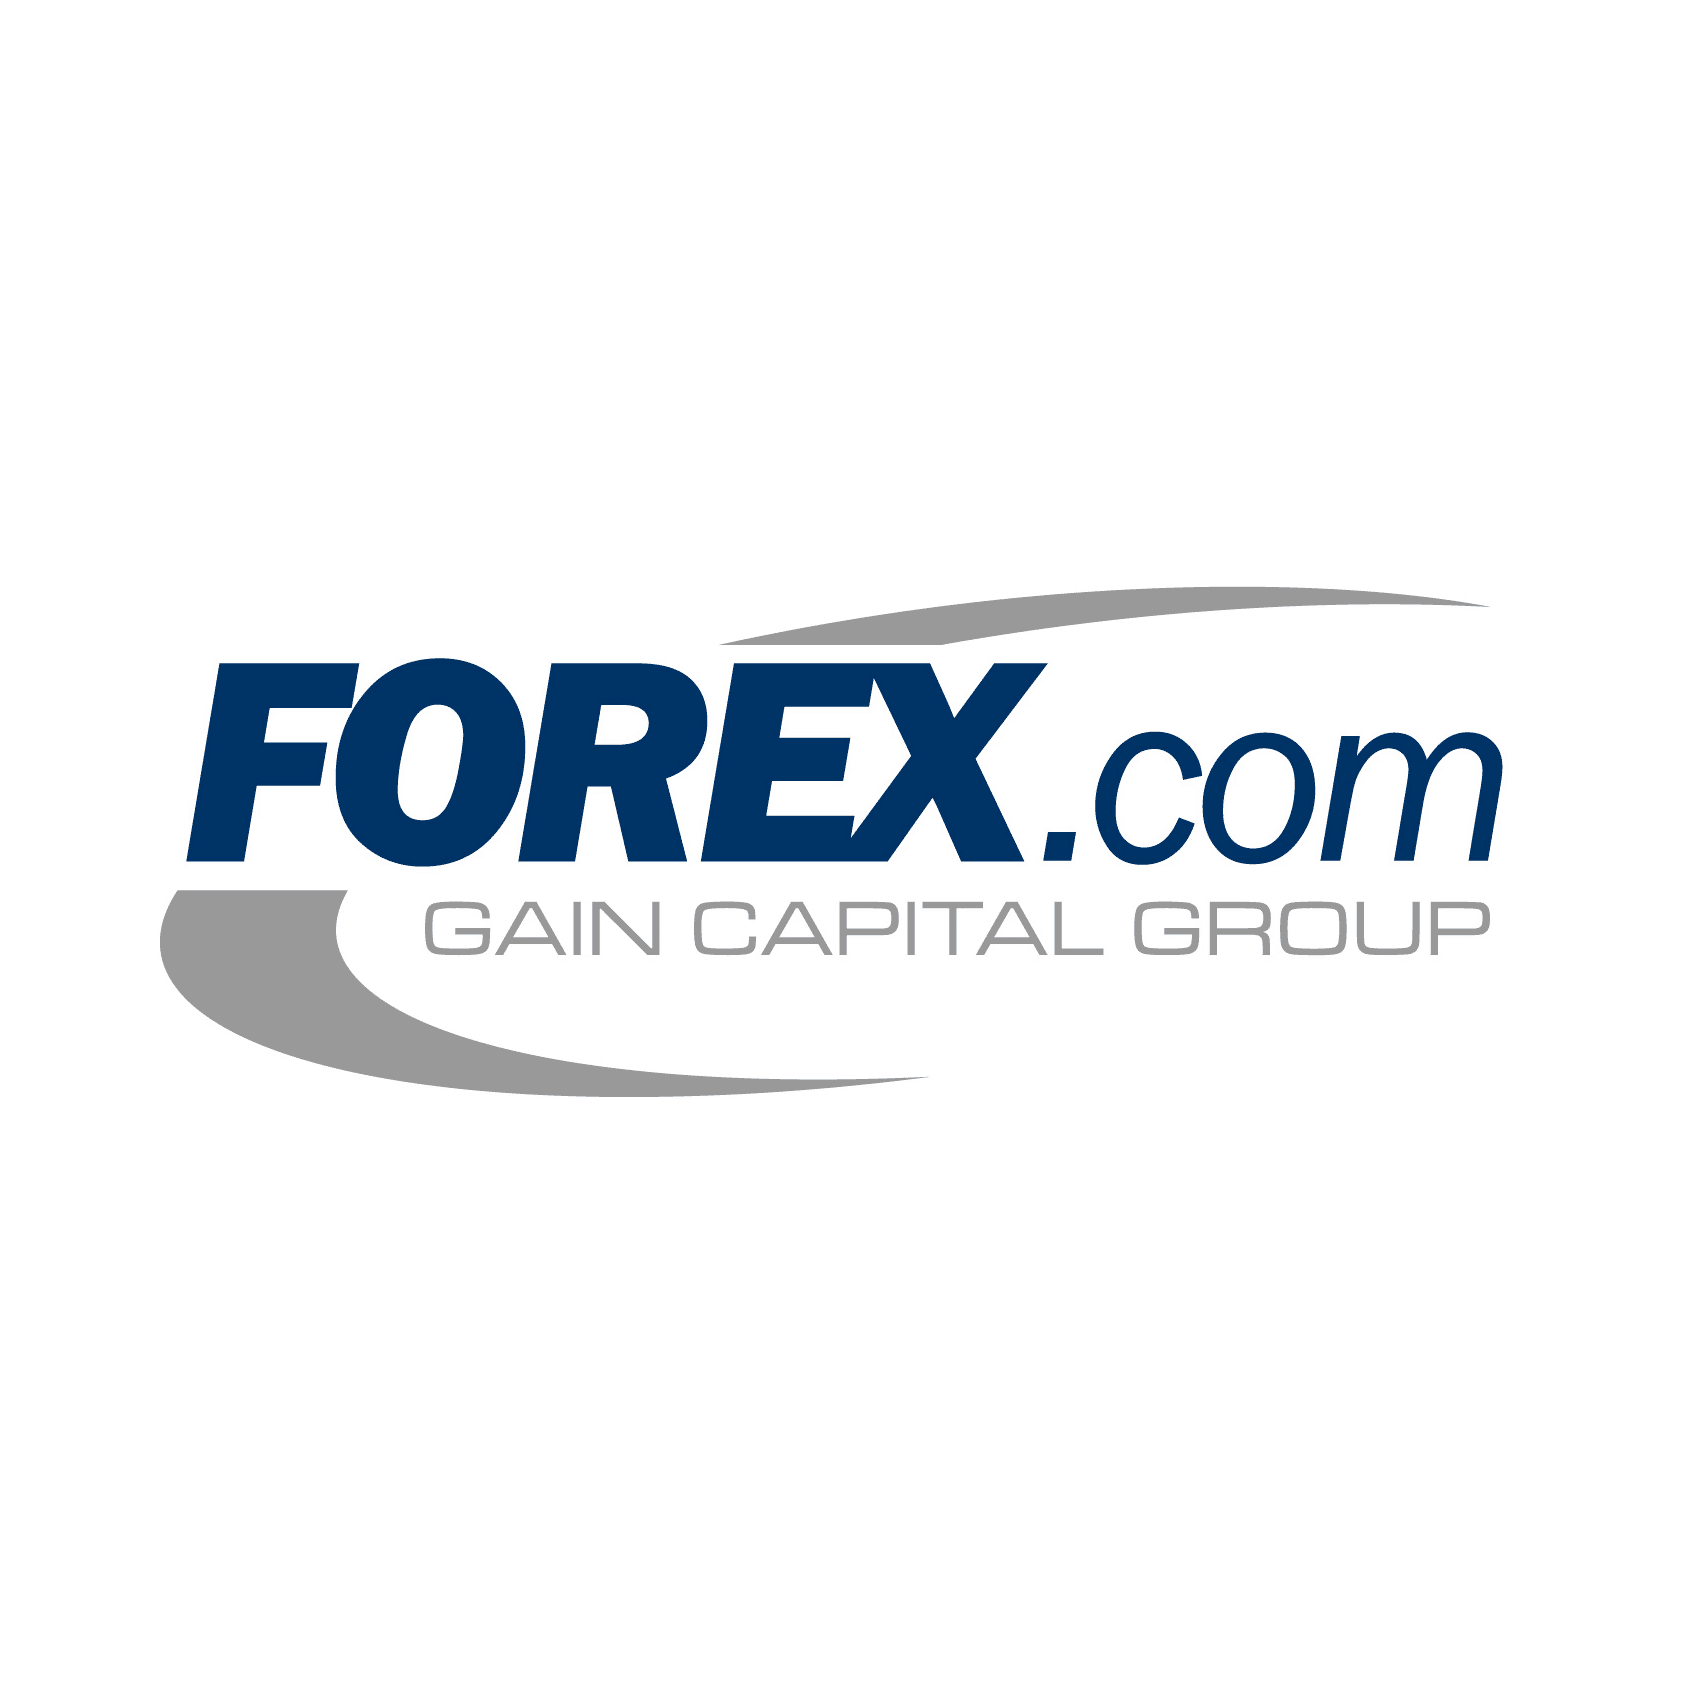 Forex com tracking